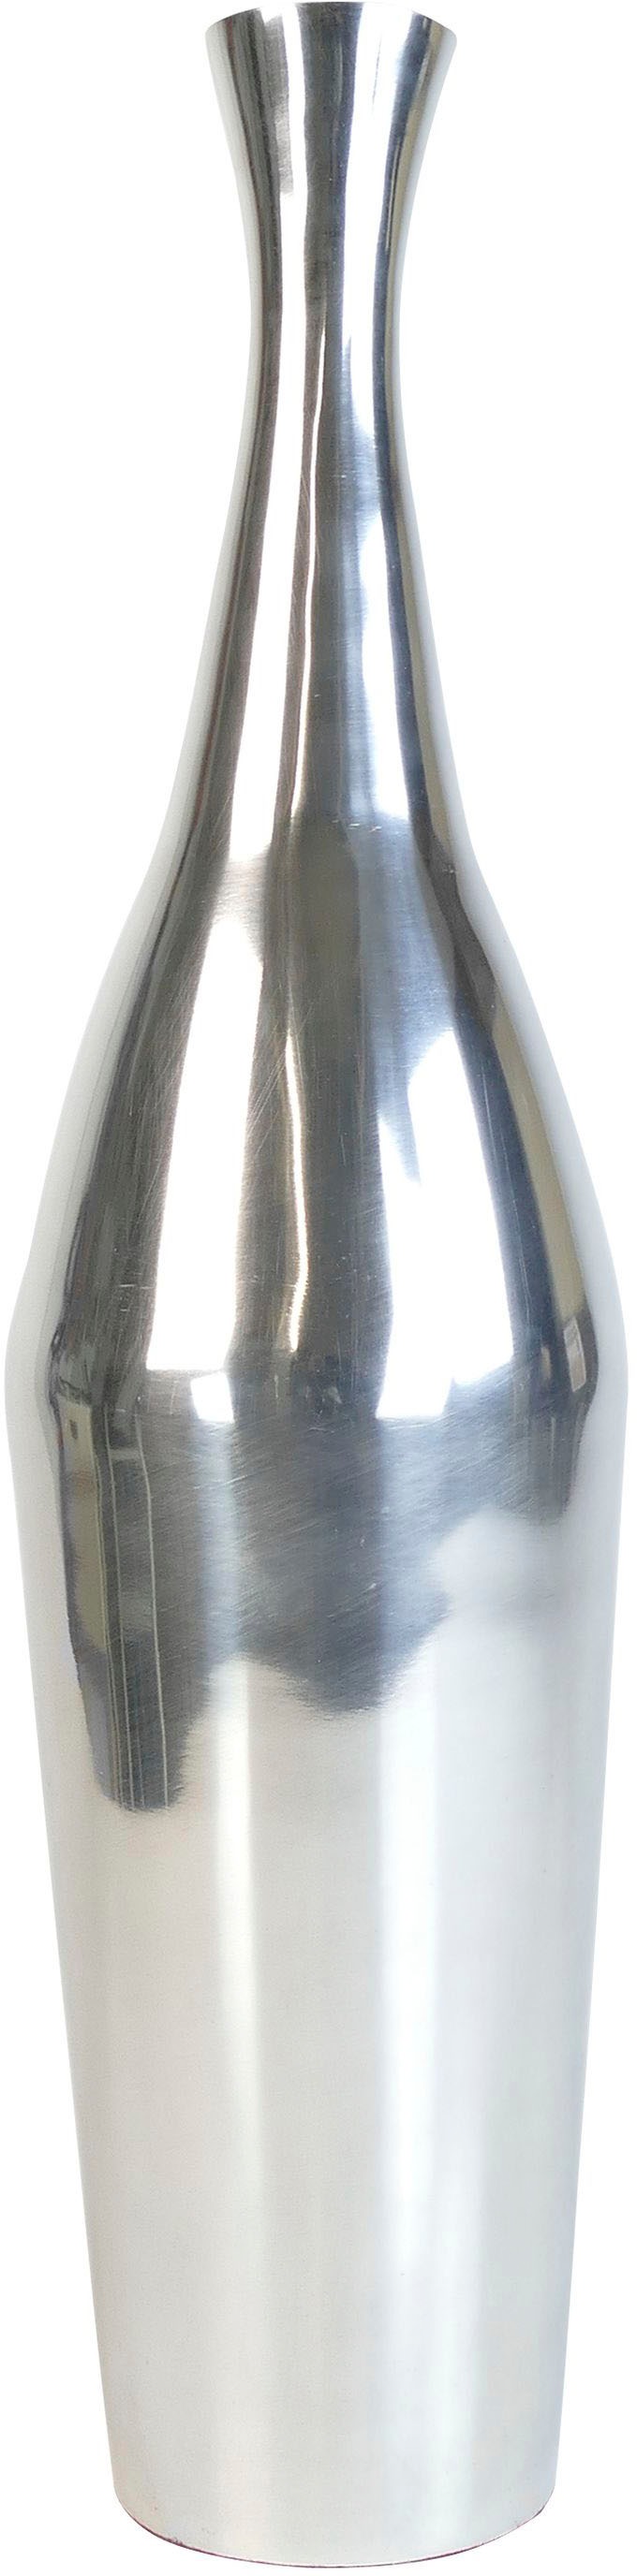 ARTRA Dekovase »Aluminiumvase \'Bottle\' M - Hoch, Dekoration« günstig kaufen | Dekovasen